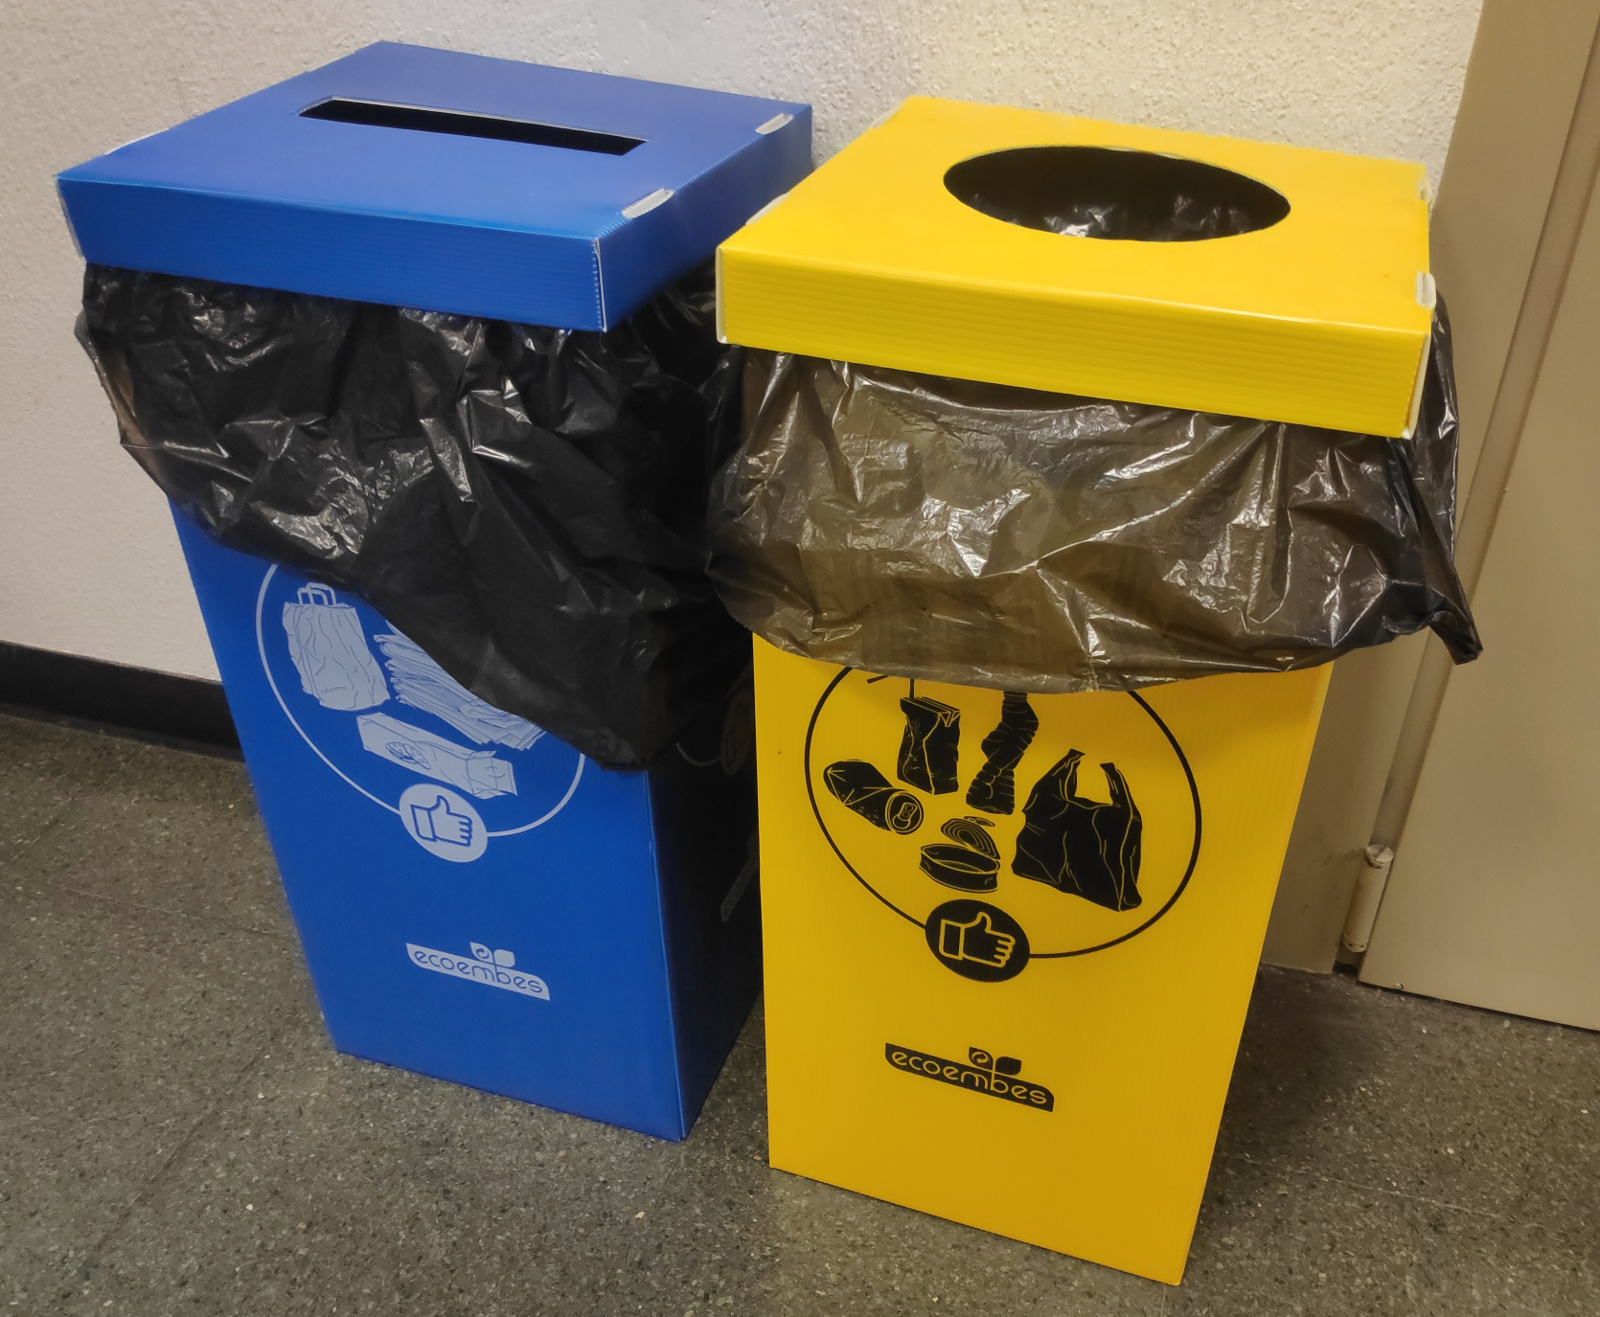 Contenedores de reciclaje y residuos; Tipos, colores y qué va en cada uno